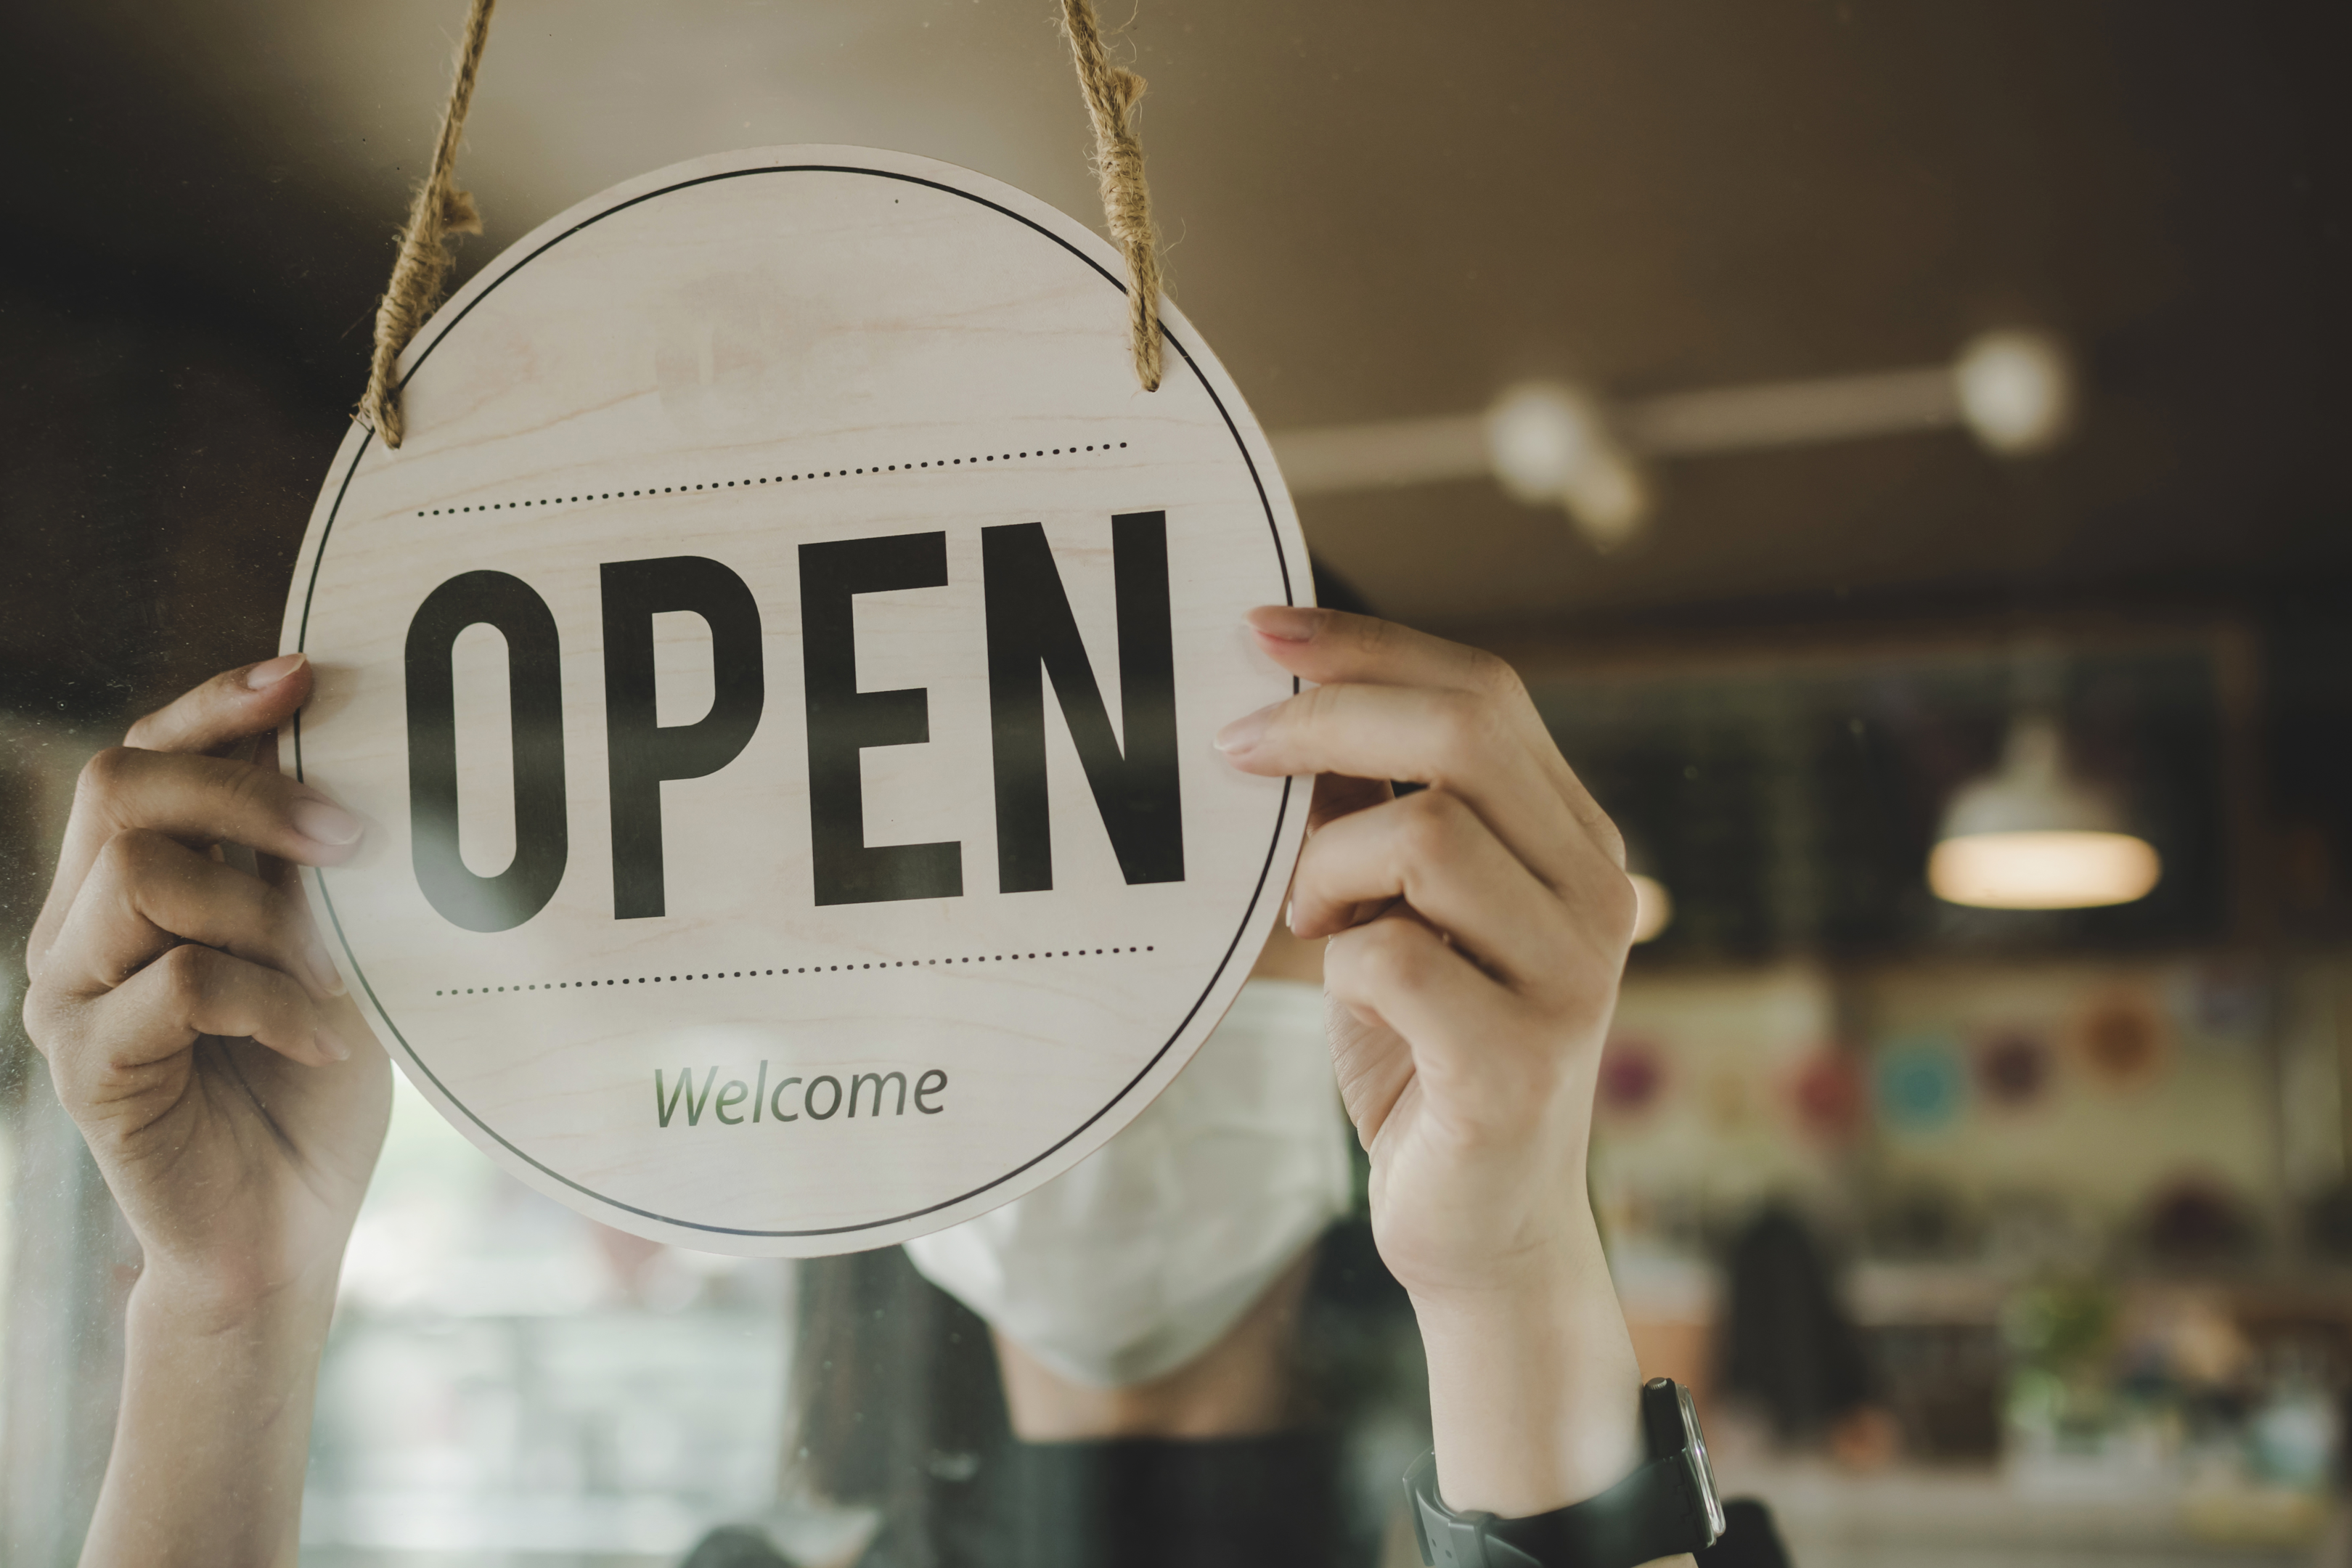 "Open" Business Sign (Shutterstock)